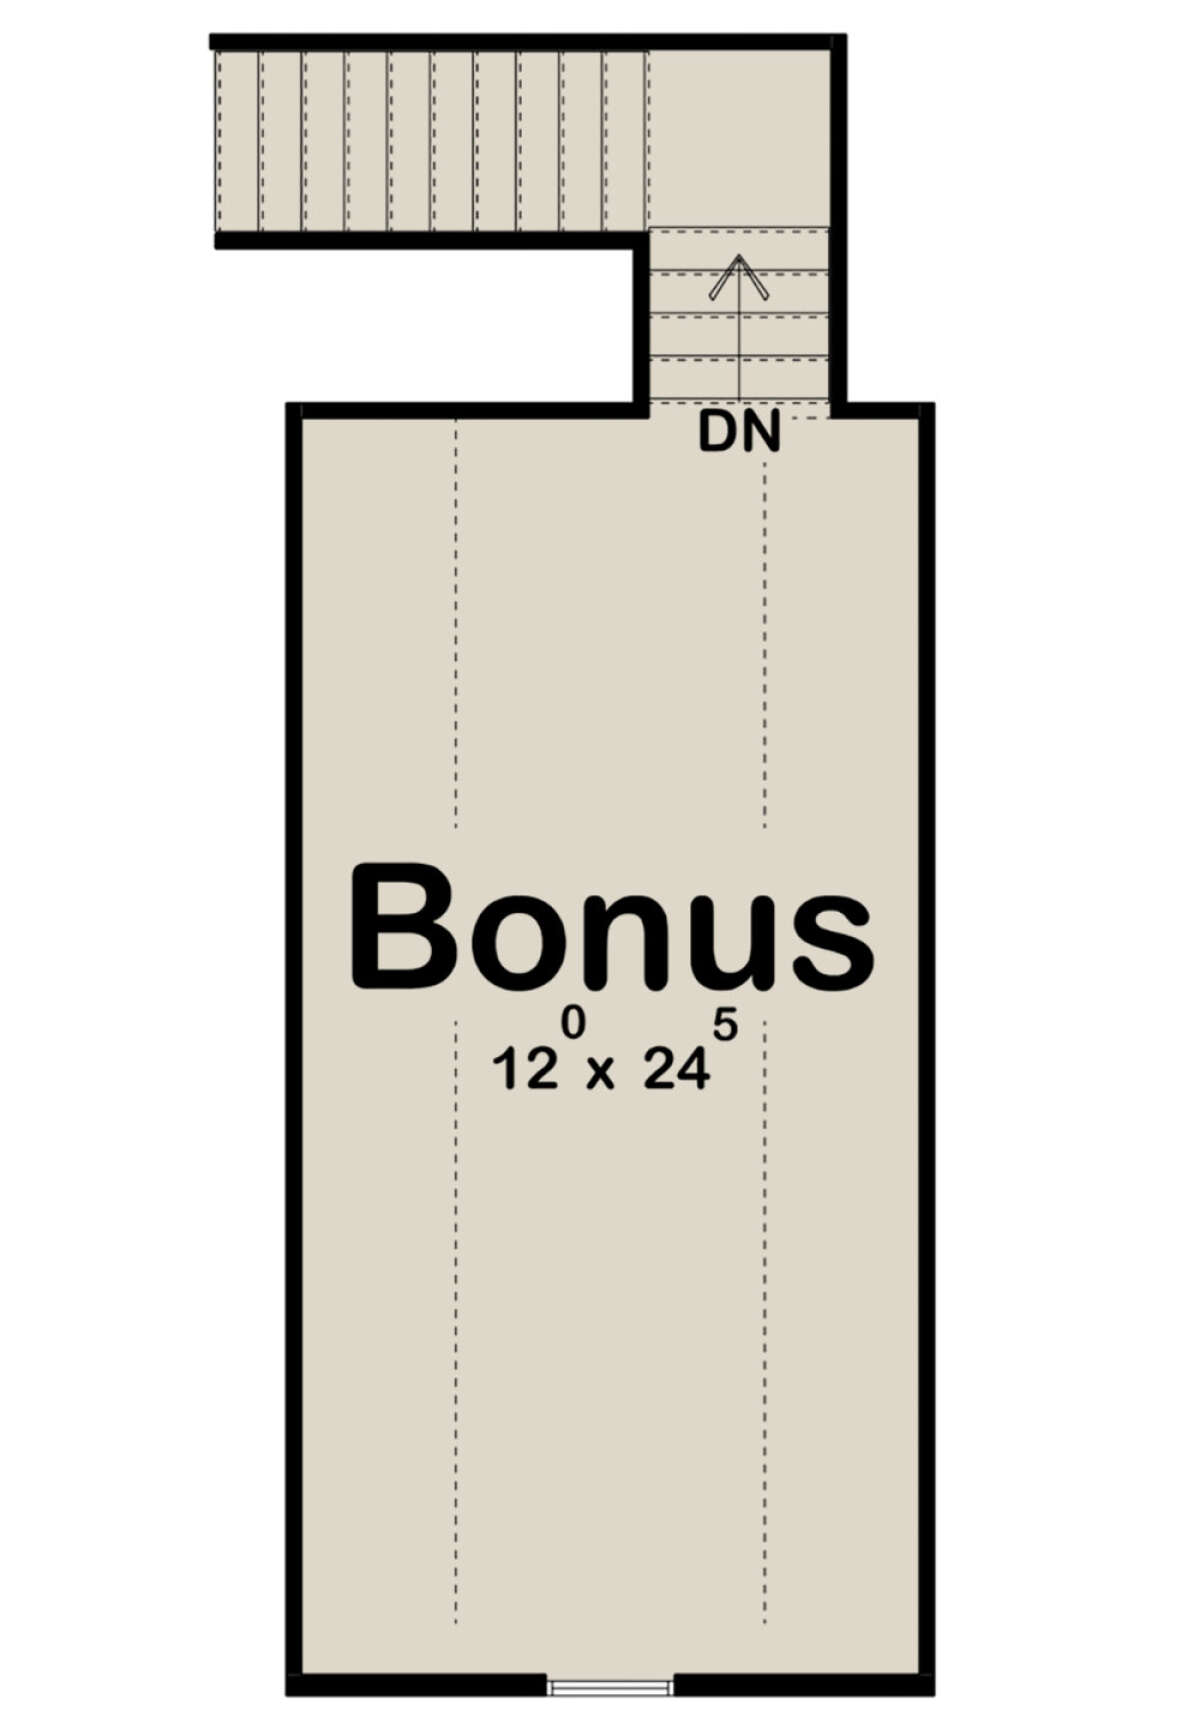 Bonus Room for House Plan #963-00462